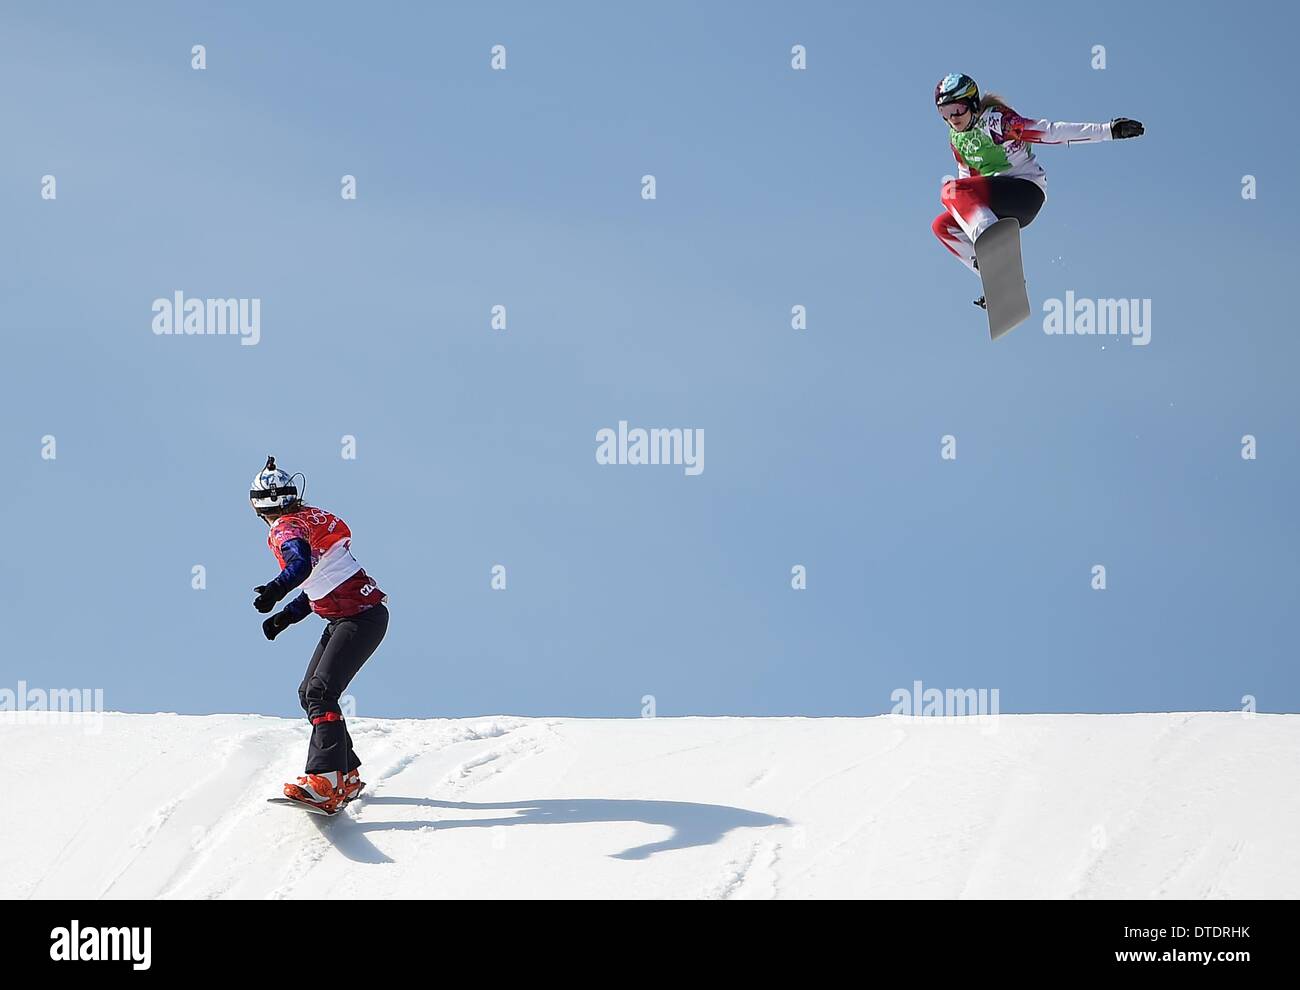 Eva Samkova (CZE) springt die letzten Hügel auf dem ersten Platz im Finale und blickt zurück auf Domonique Maltais (können, grün). Womens Snowbboard Cross - Rosa Khutor Extreme Park - Sotschi - Russland - 16.02.2014 Stockfoto